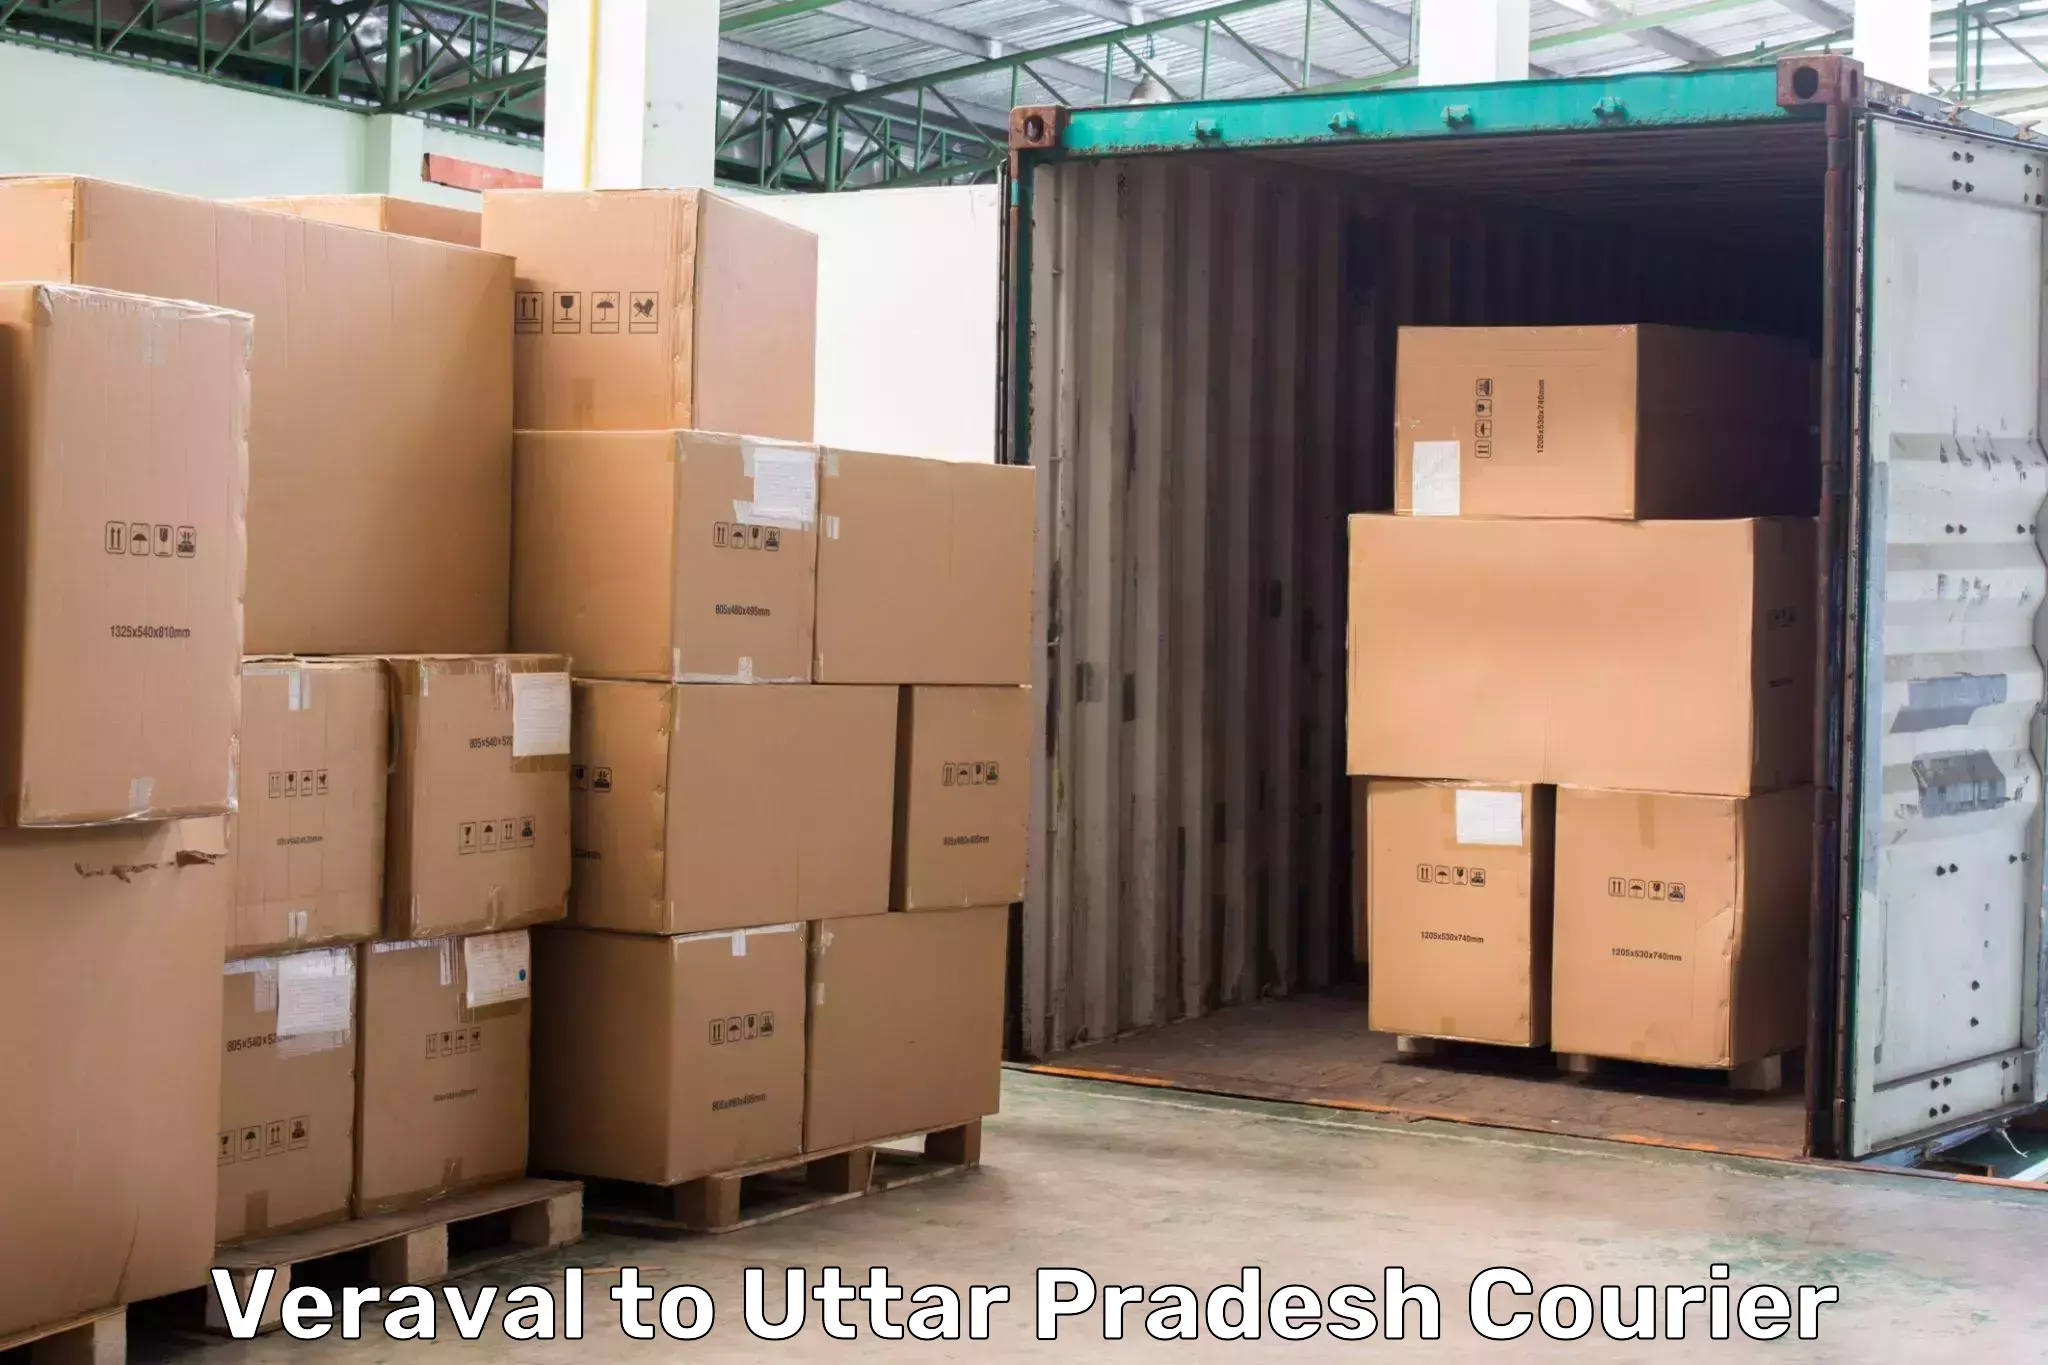 Speedy delivery service Veraval to Uttar Pradesh